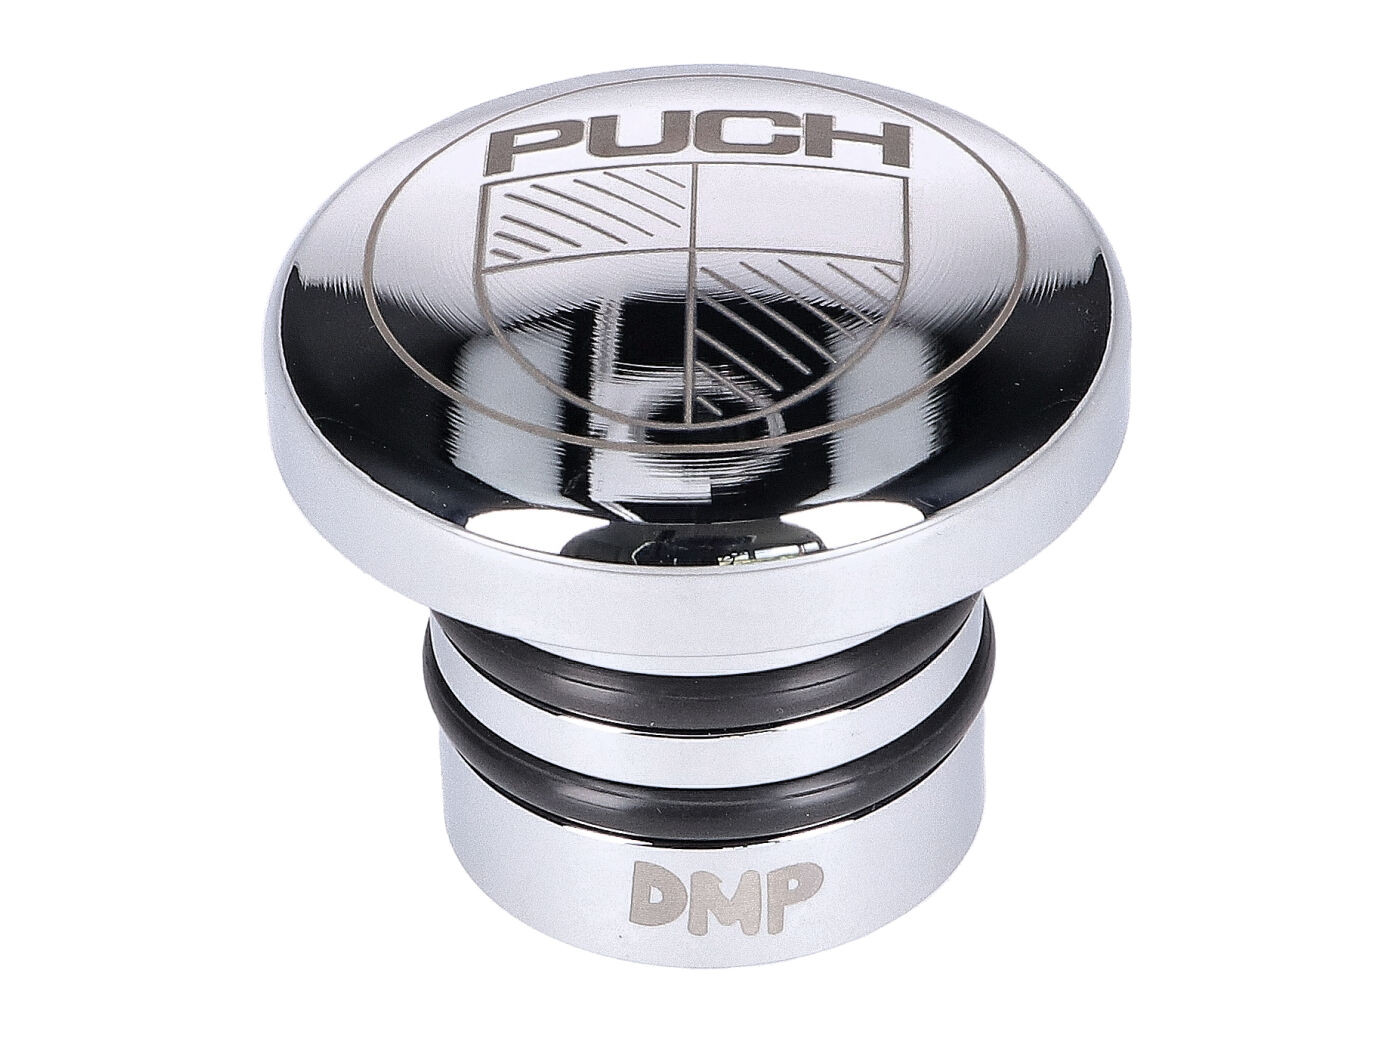 Üzemanyagtöltő kupak rozsdamentes acélból, polírozott, Puch logóval, Puch Maxi S, N modellekhez